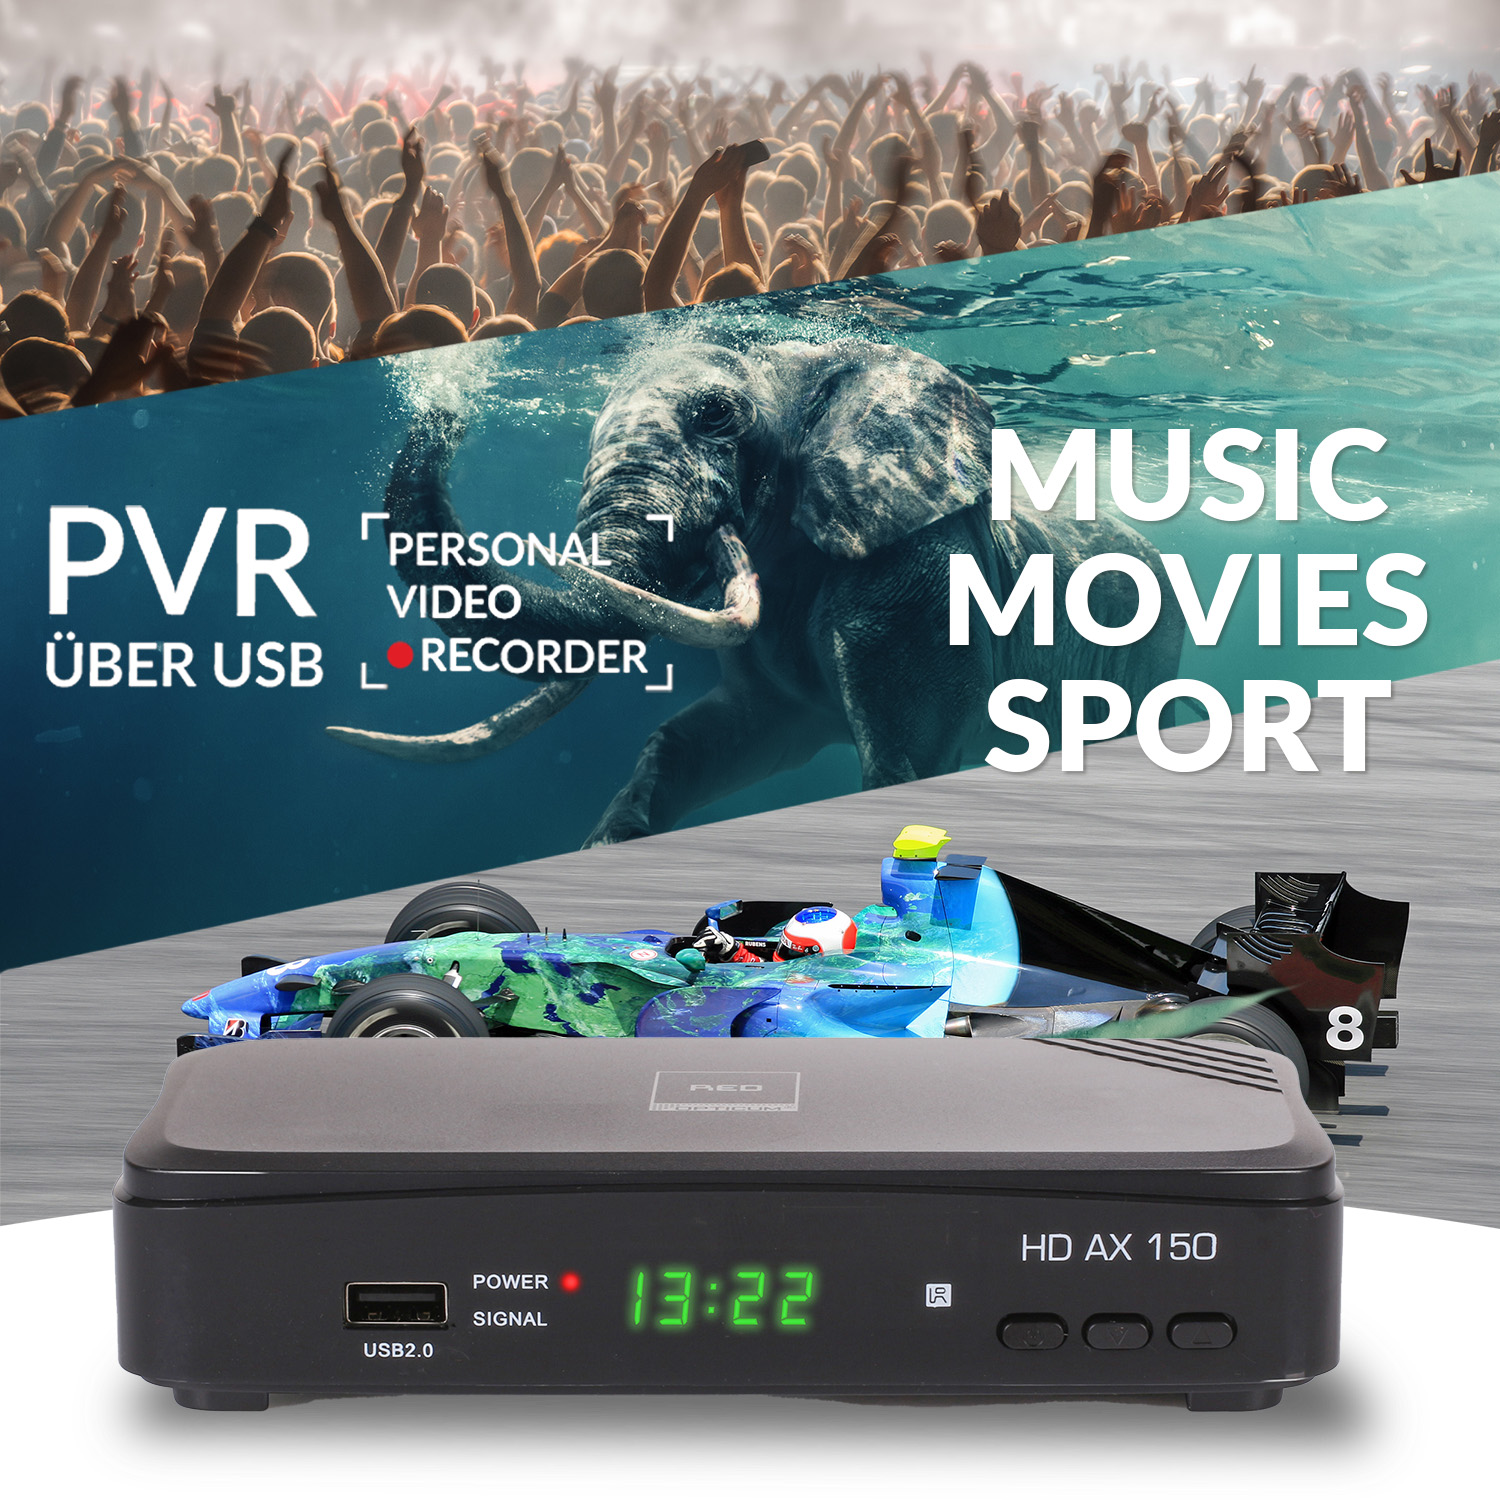 DVB-S2, PVR OPTICUM RED Opticum Sat-Receiver 150 mit schwarz) (HDTV, DVB-S, PVR-Funktion, AX